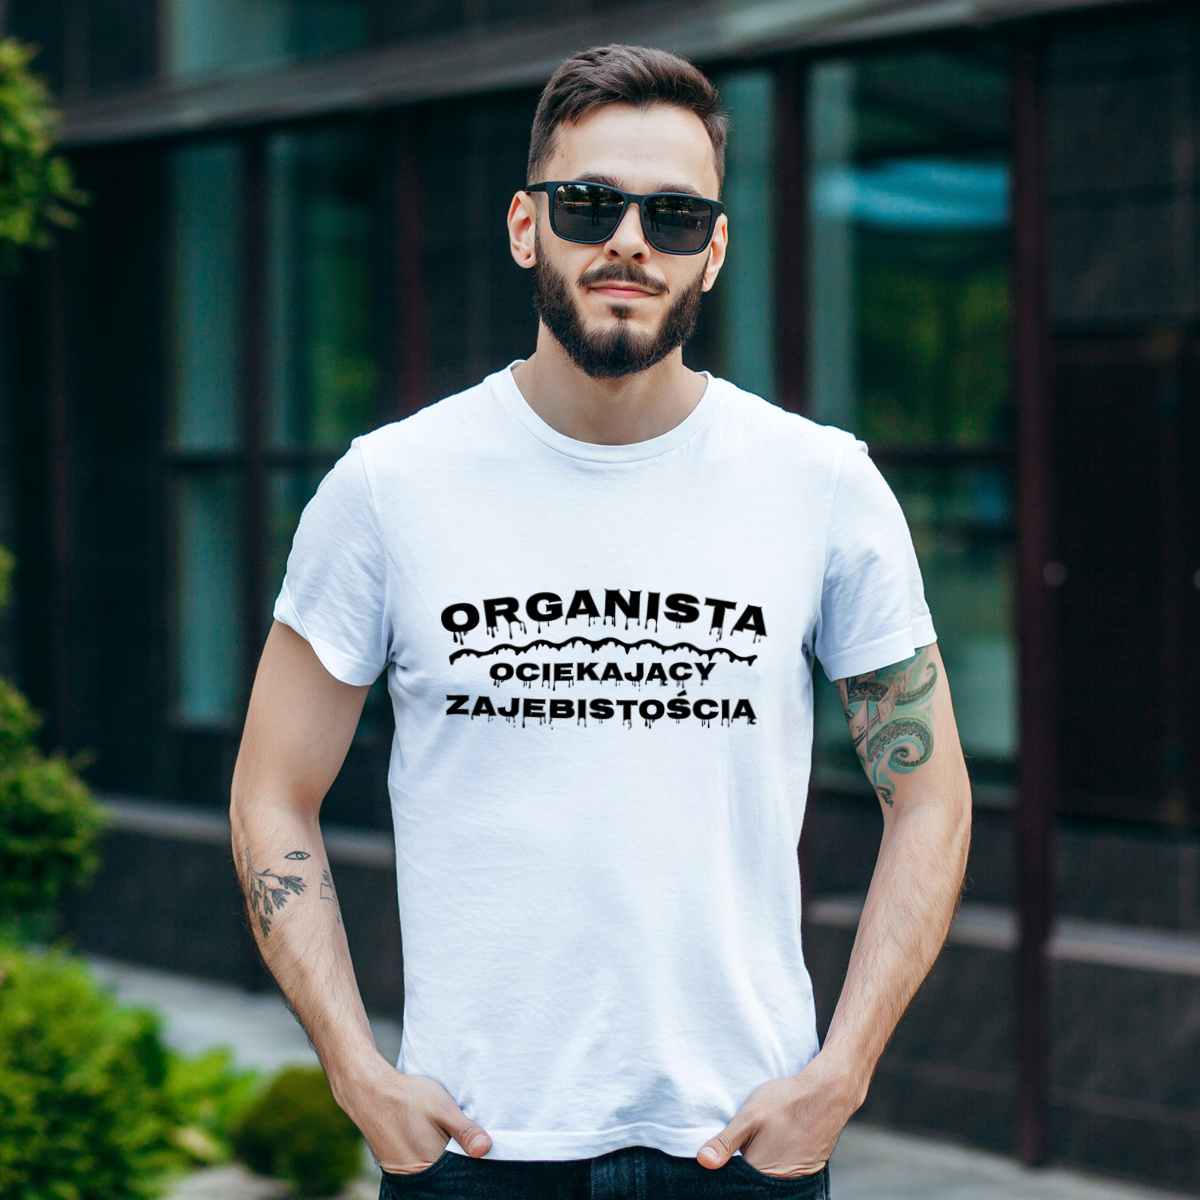 Organista Ociekający Zajebistością - Męska Koszulka Biała